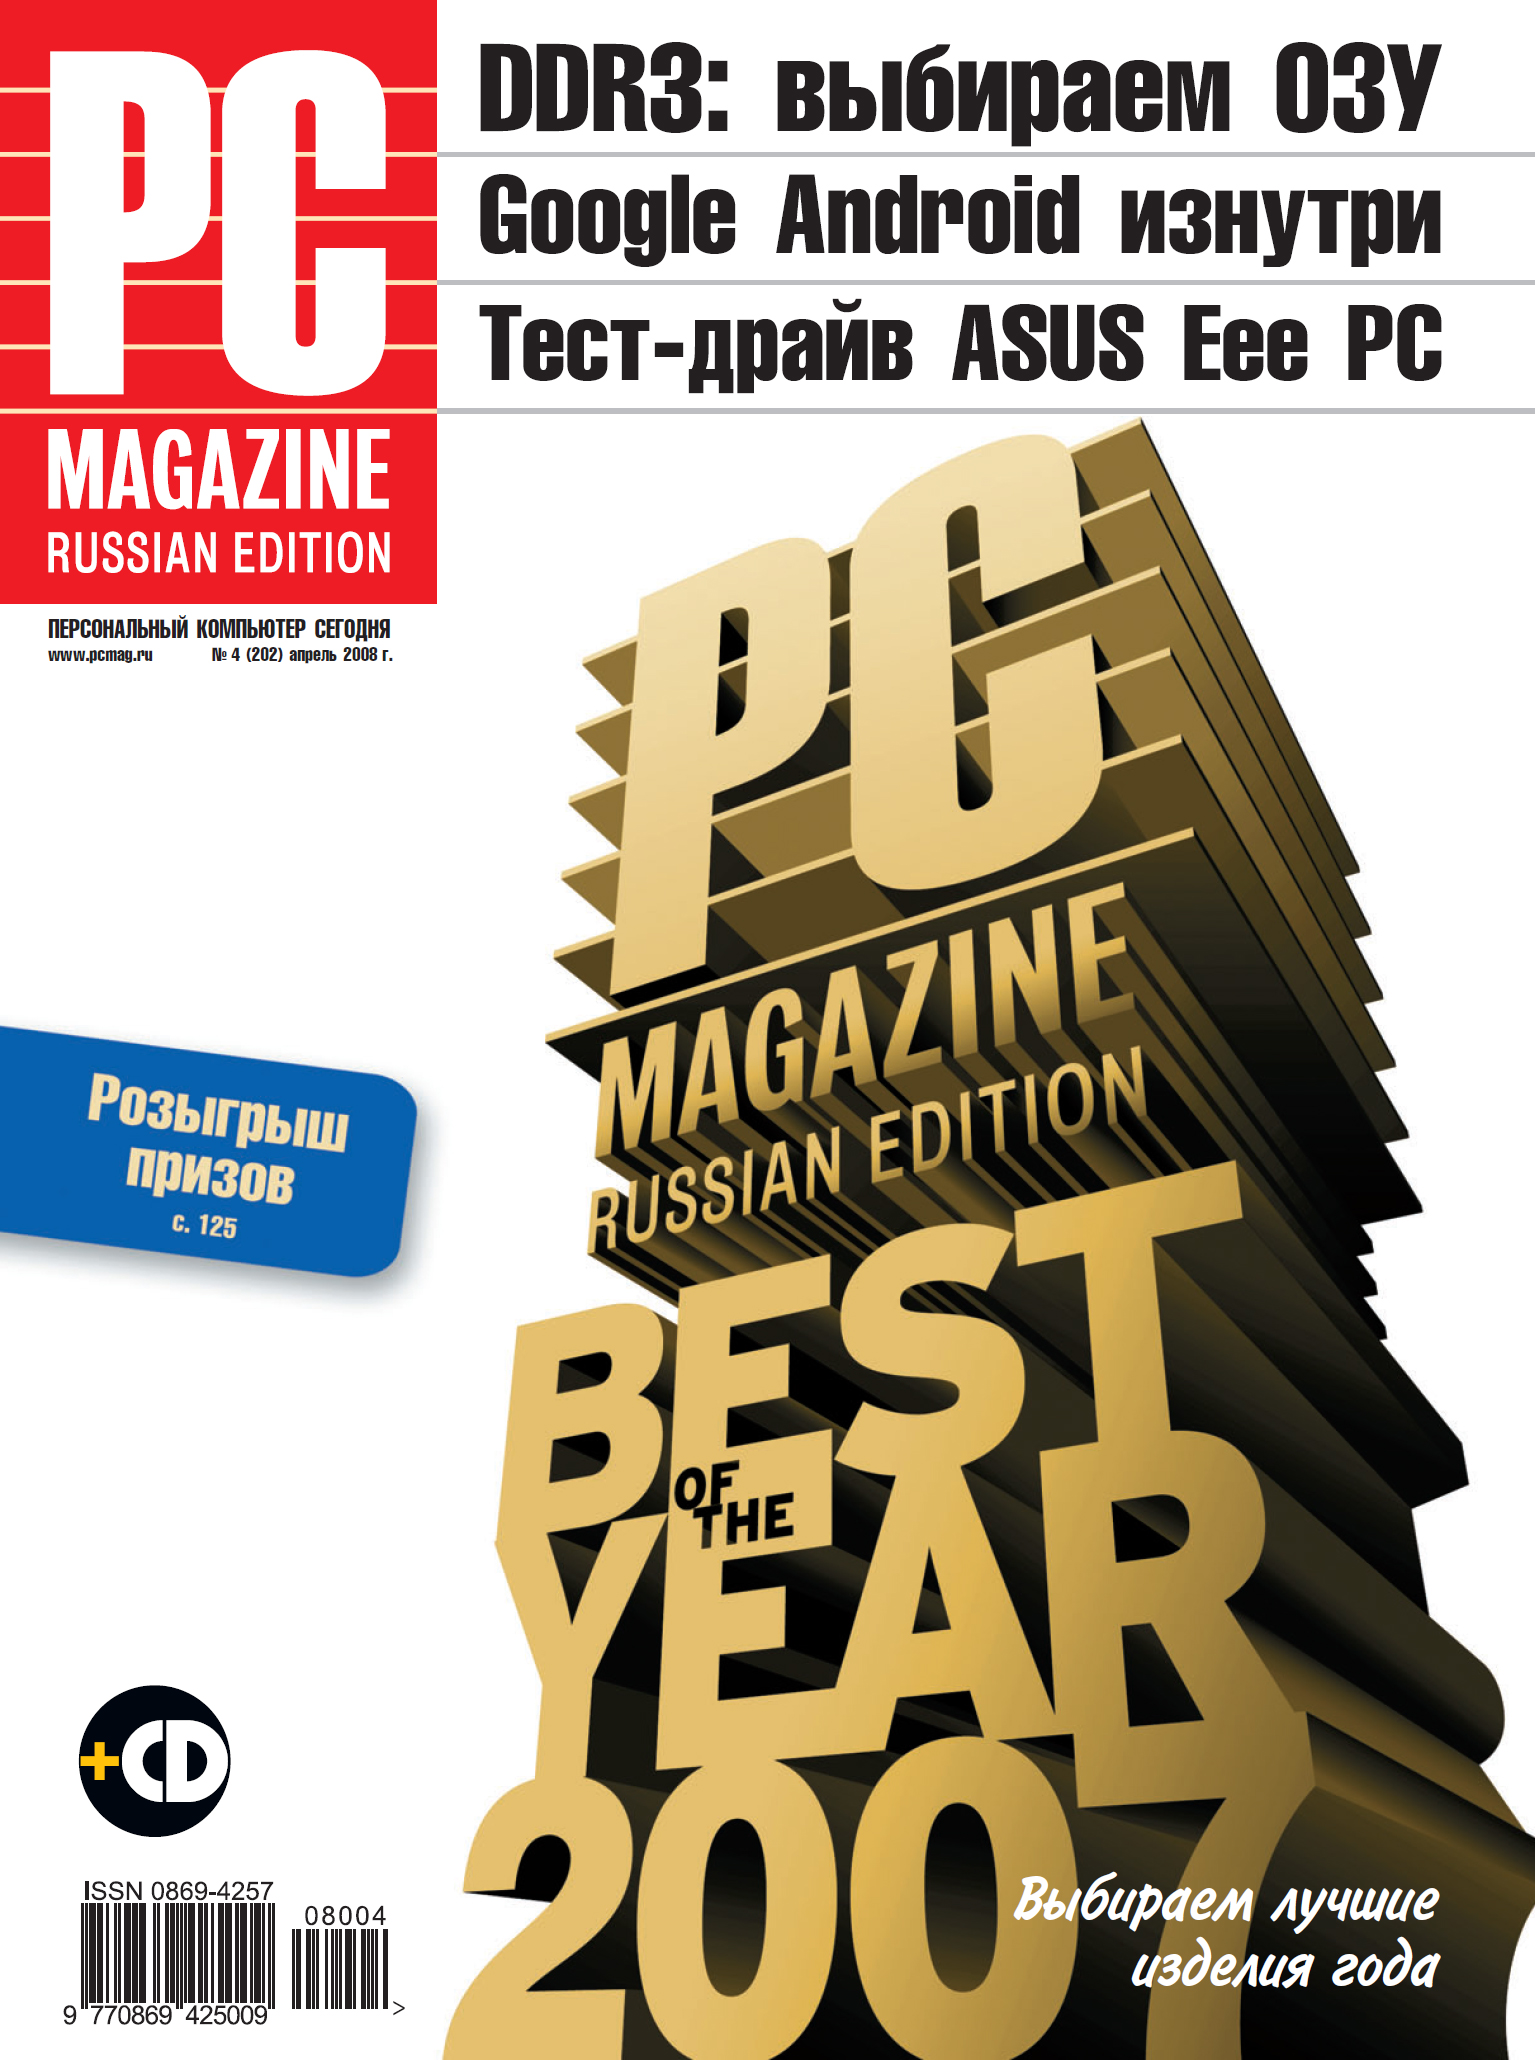 Книга Журнал PC Magazine/RE №04/2008 из серии , созданная  PC Magazine/RE, может относится к жанру Компьютеры: прочее. Стоимость электронной книги Журнал PC Magazine/RE №04/2008 с идентификатором 181121 составляет 24.95 руб.